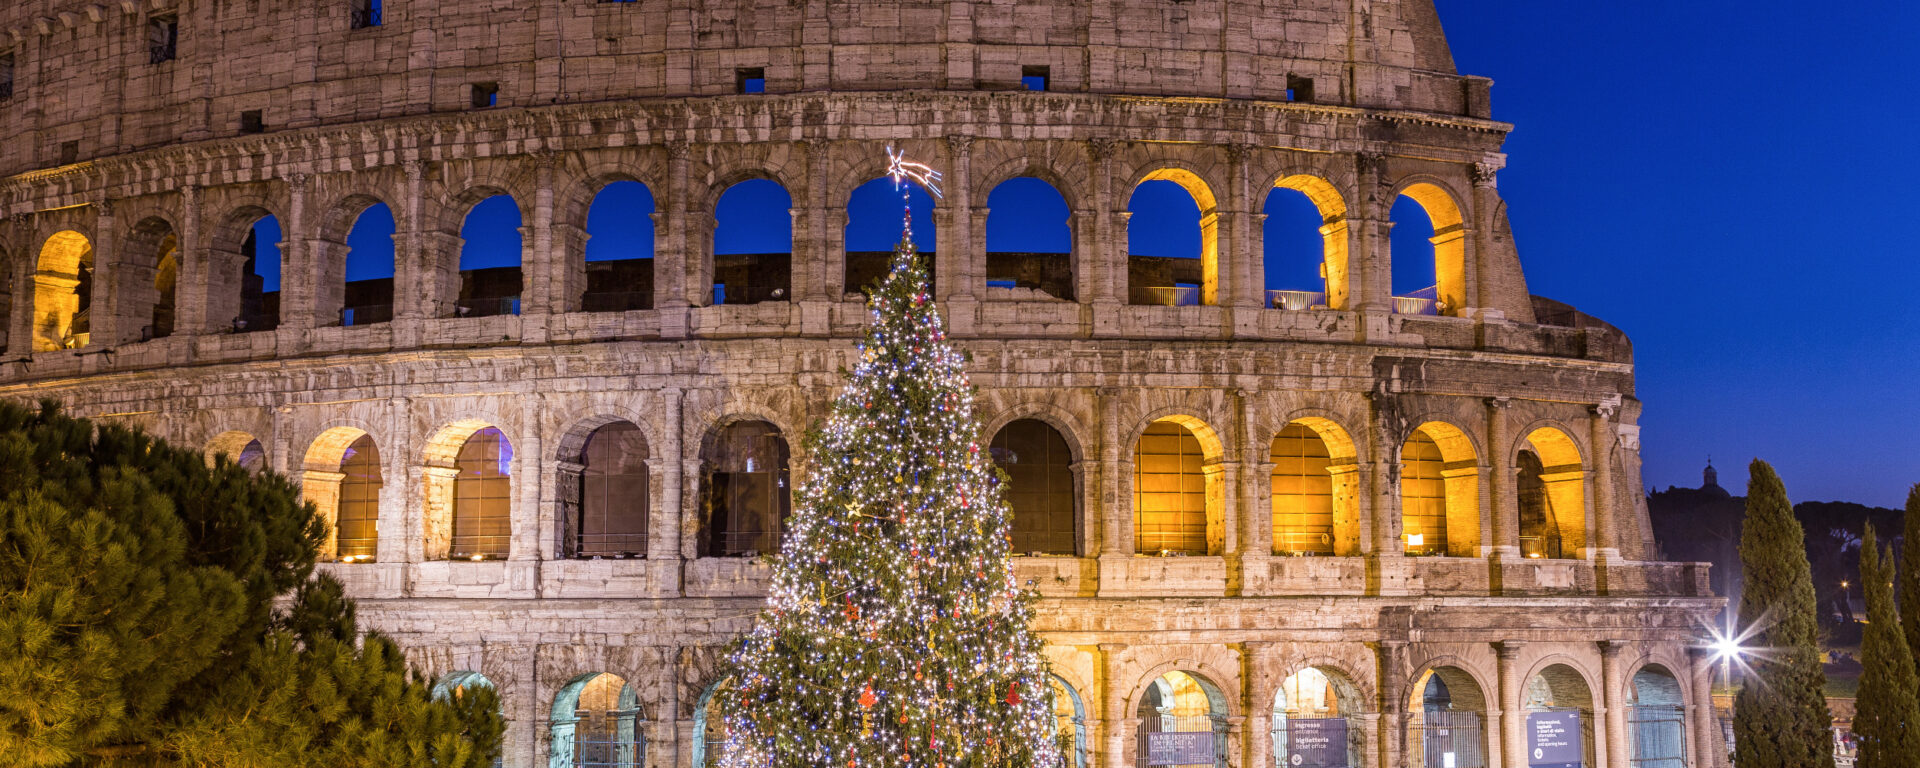 Rome à Noël - Le Colosseo